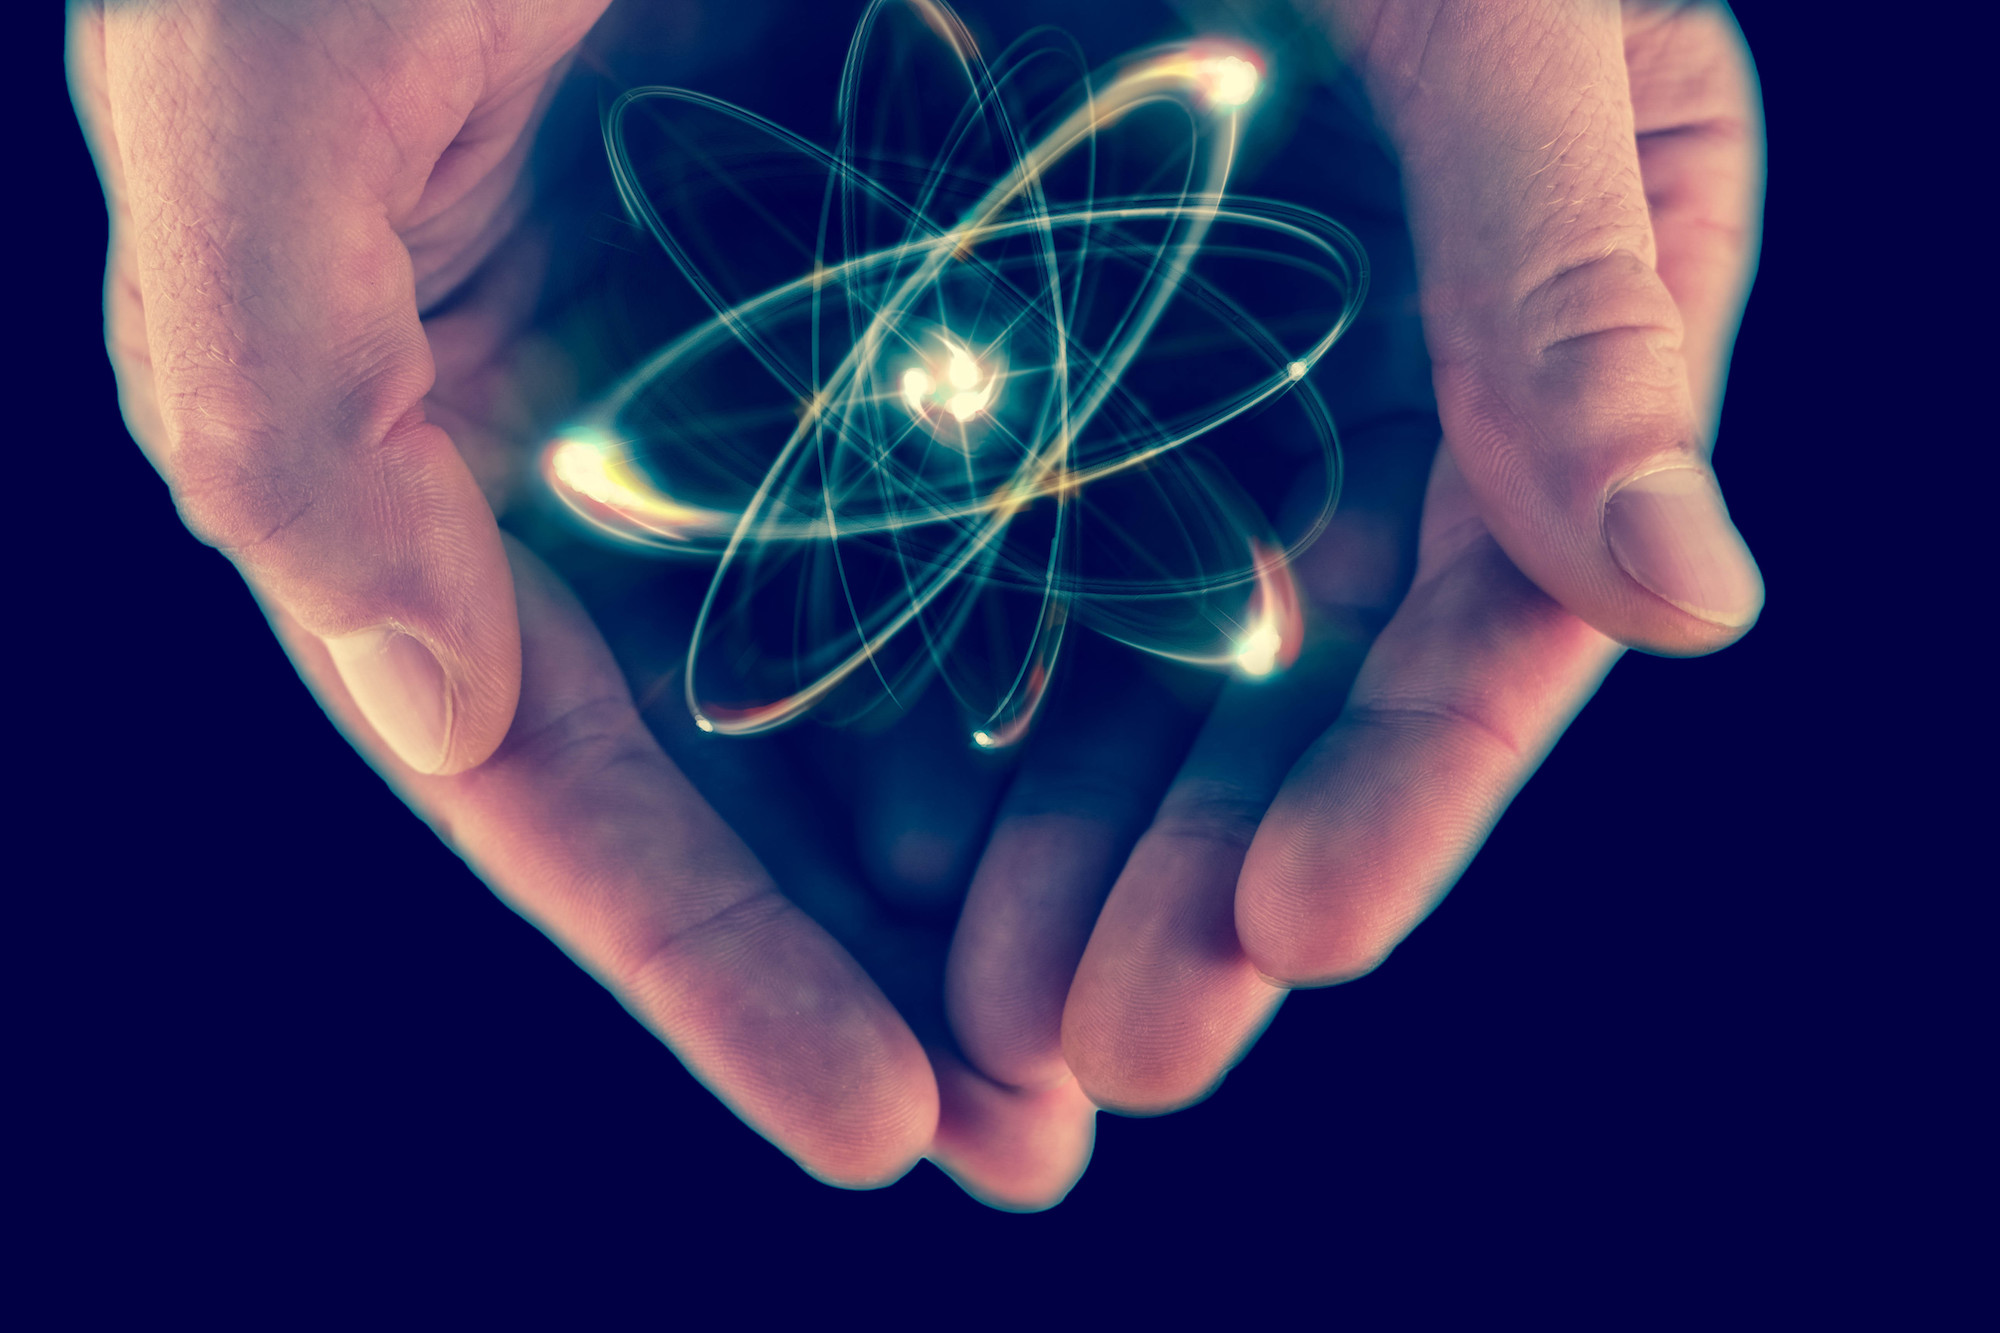 Les atomes sont au cœur de la matière. © Ezume Images, Shutterstock